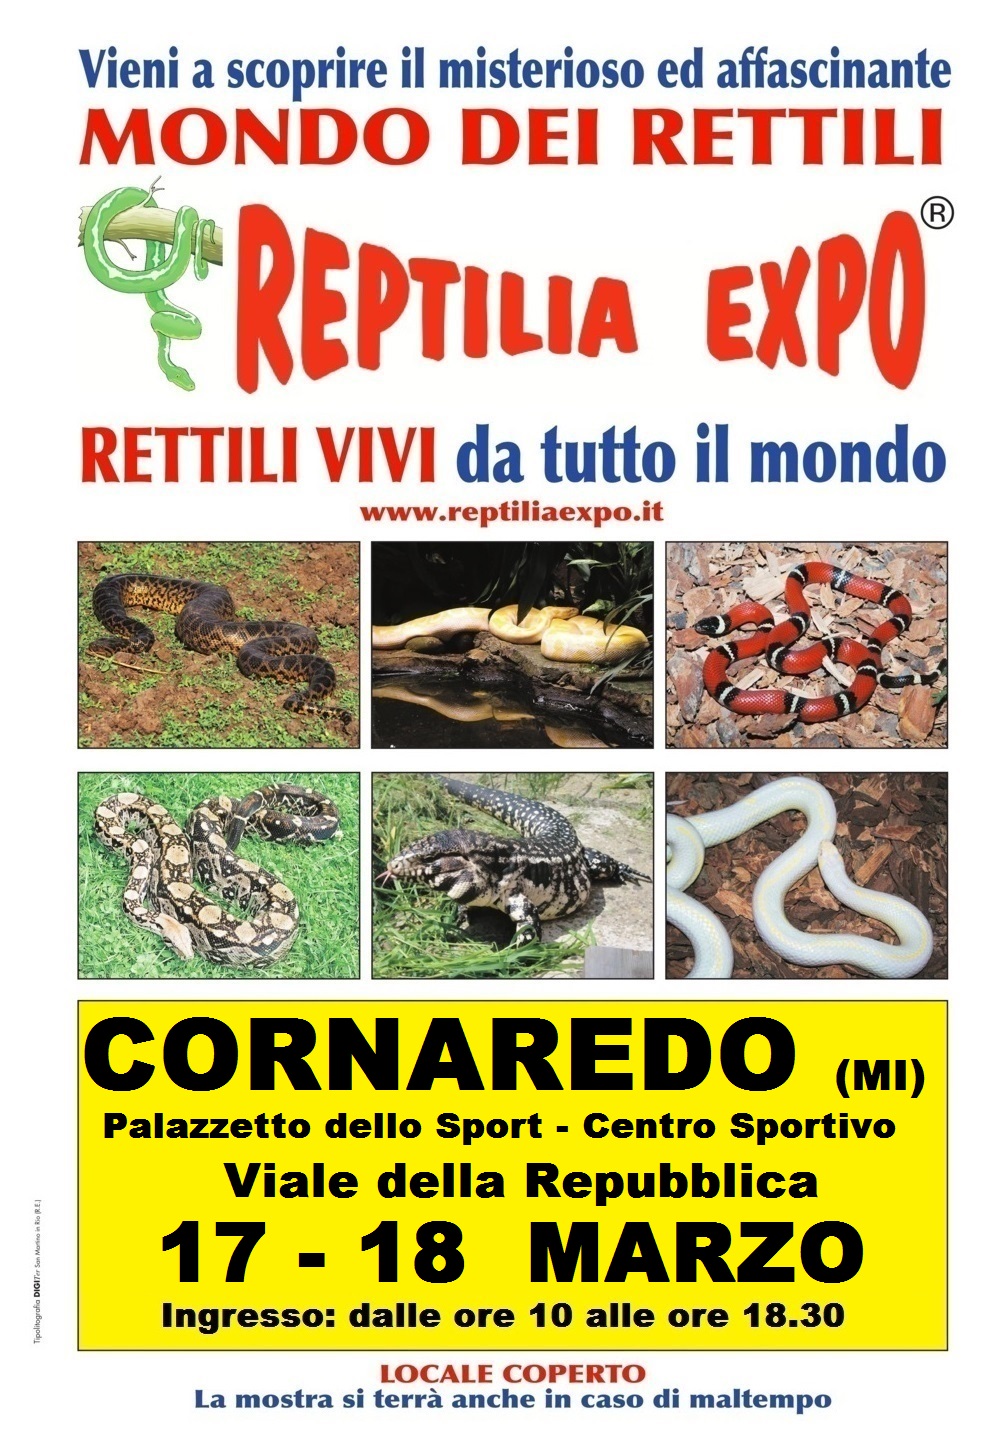 REPTILIA EXPO: l'affascinante mondo dei rettili al Palazzetto dello Sport di Cornaredo (Milano)